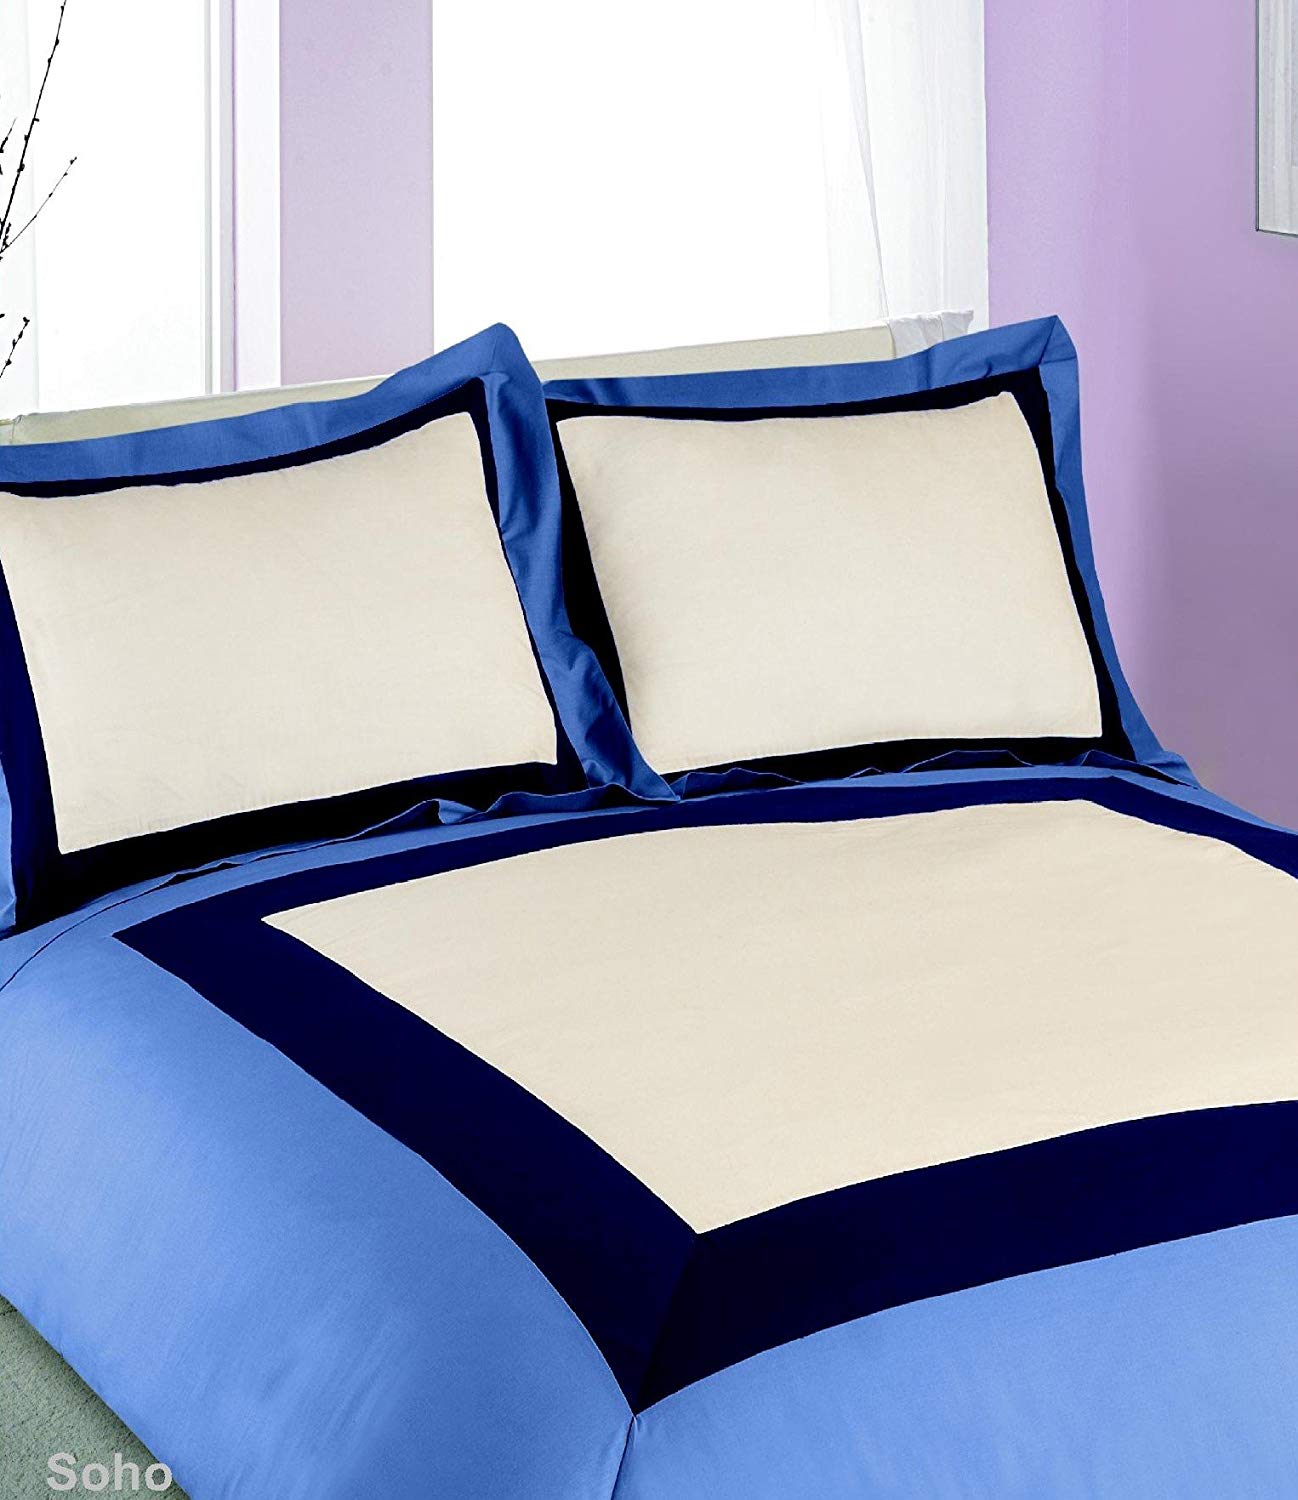 Double Bed Duvet Cover Set Soho Blue